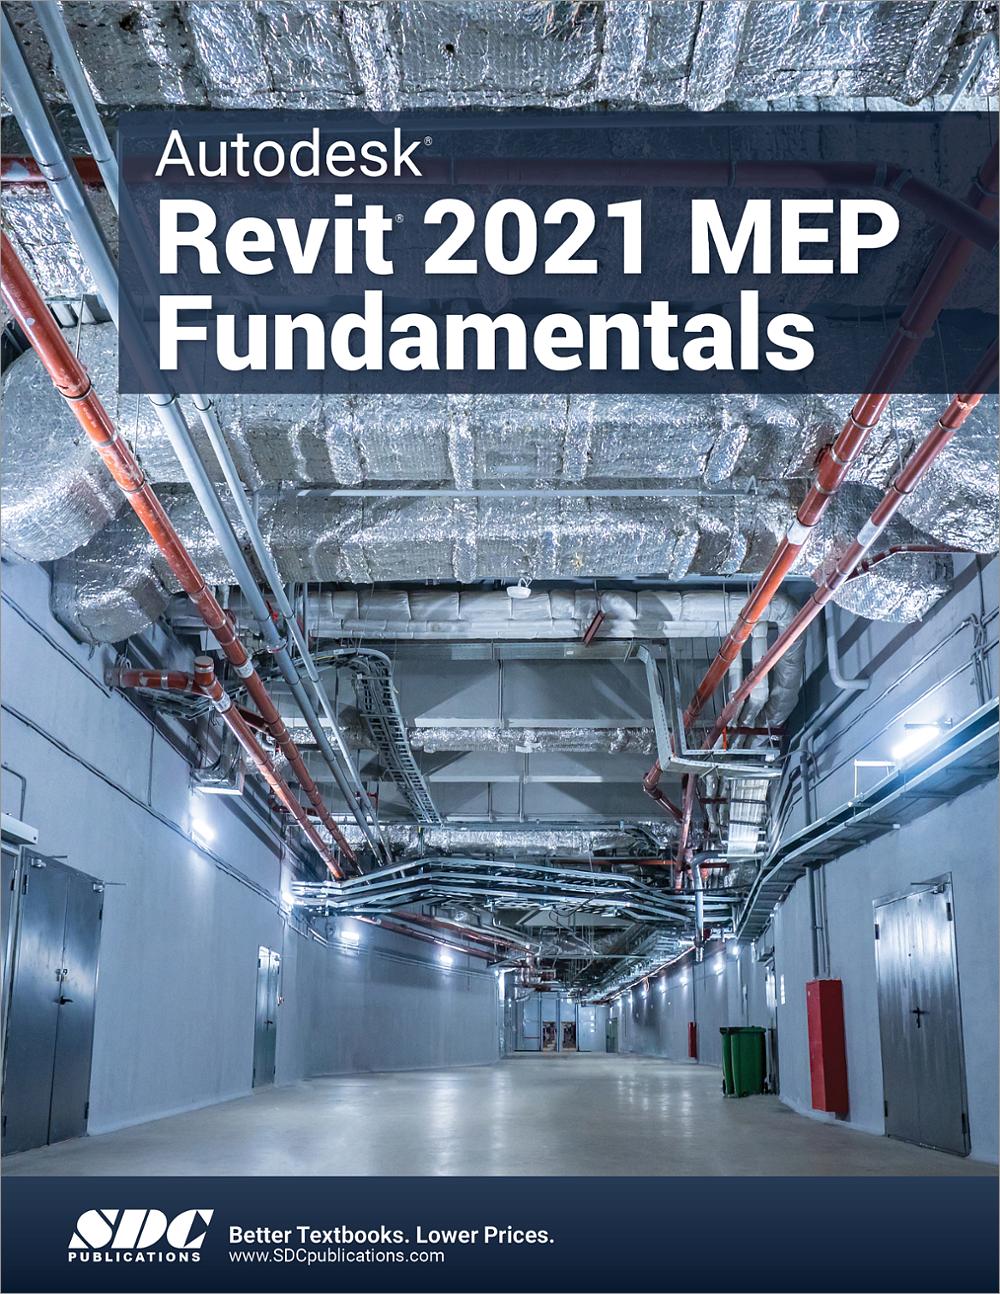 ascent autodesk revit 2021 mep fundamentals download